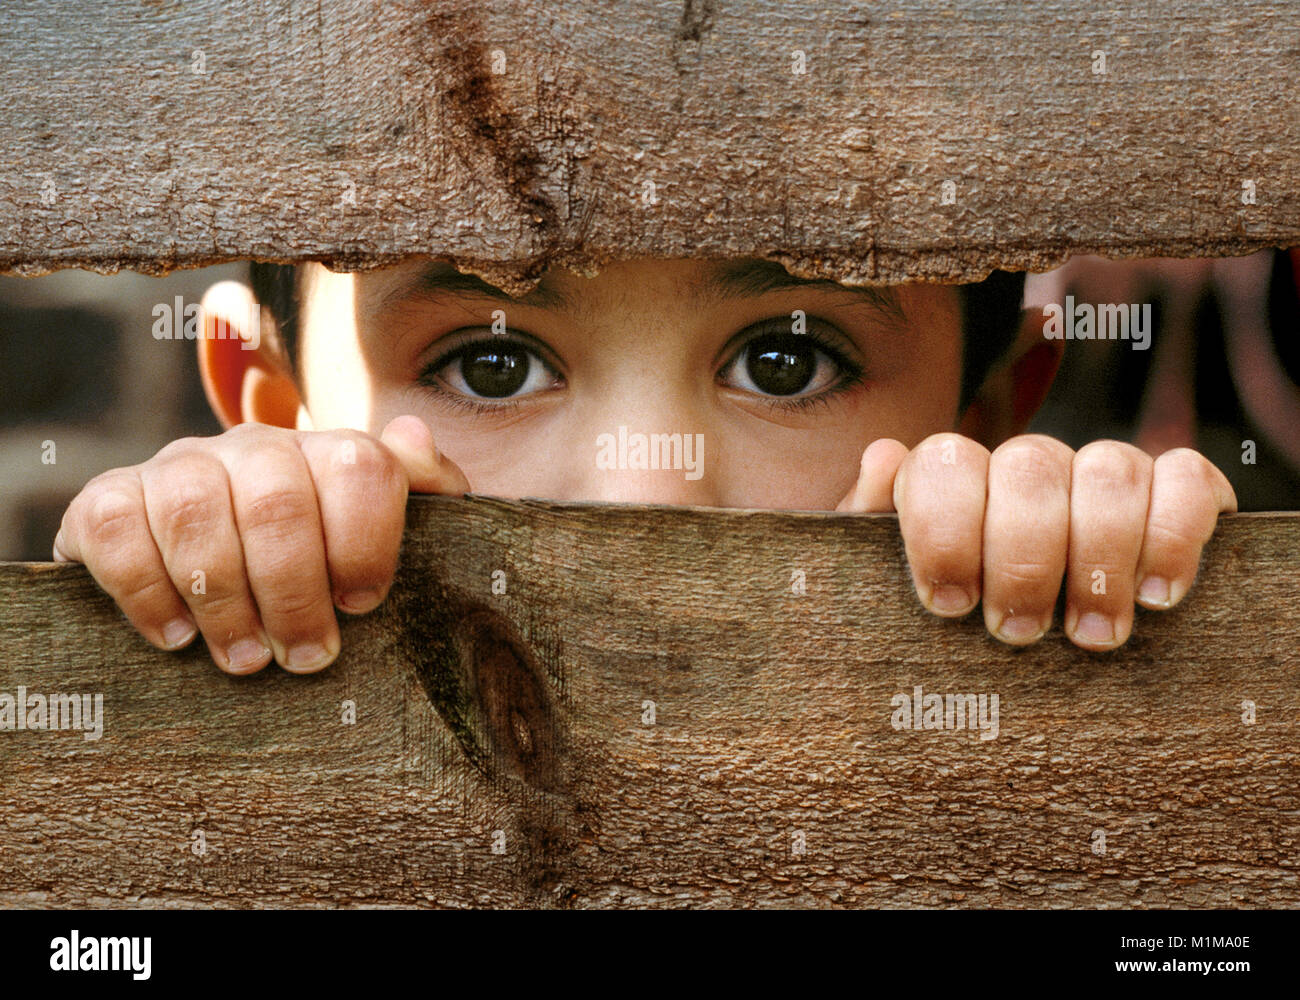 Niño pequeño con ojos de color marrón oscuro mirando a través de la brecha en la antigua valla de madera roto.asomarse al futuro Foto de stock